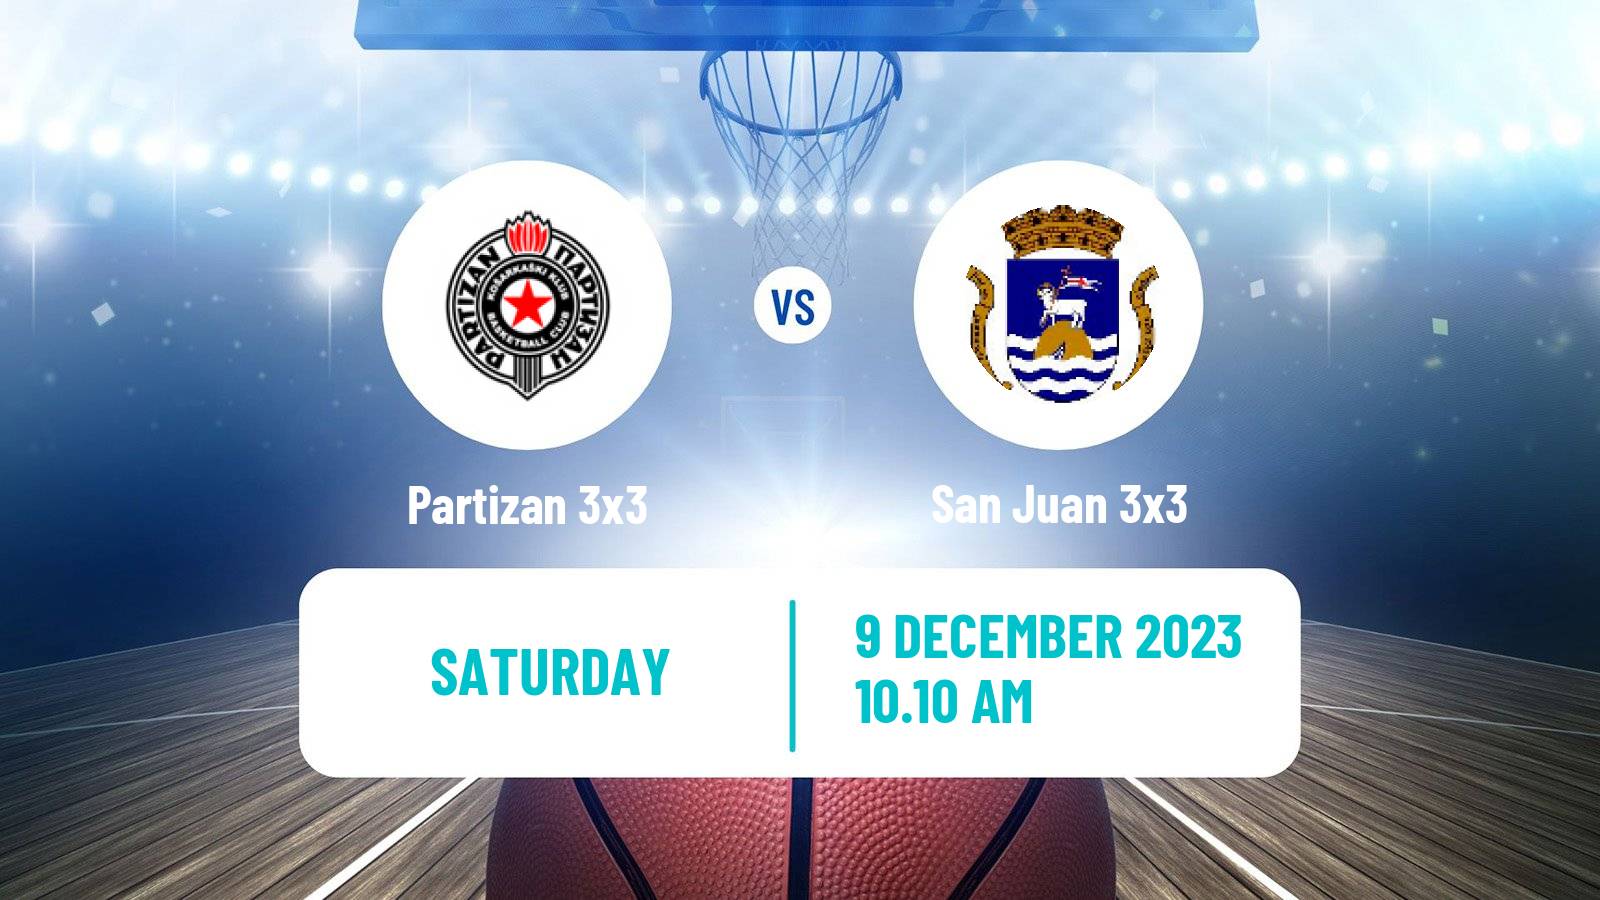 Basketball World Tour Final 3x3 Partizan 3x3 - San Juan 3x3